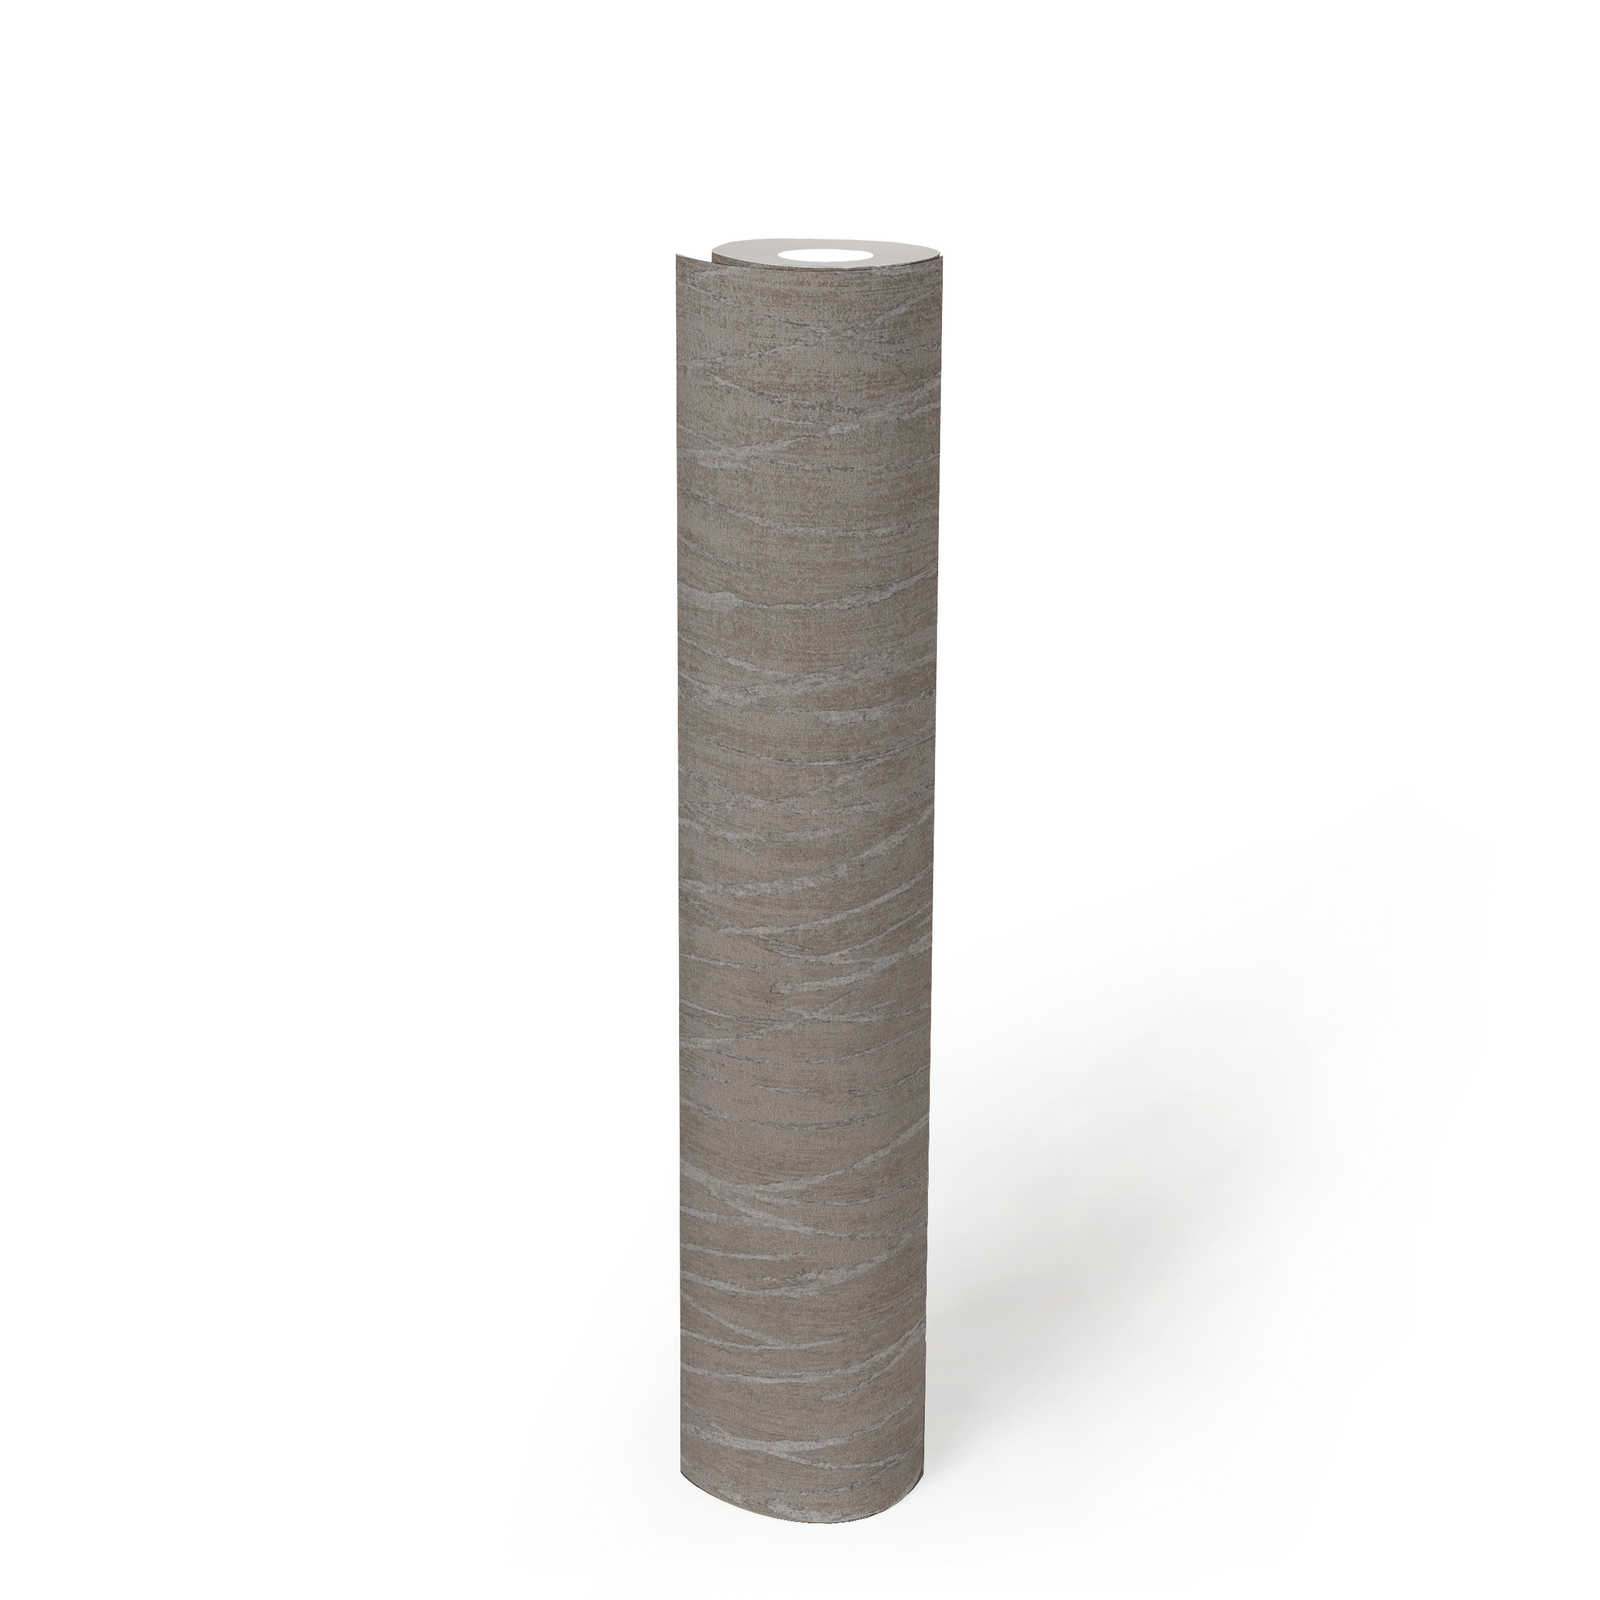             Skandinavische Tapete mit Metallic Design – Beige, Grau
        